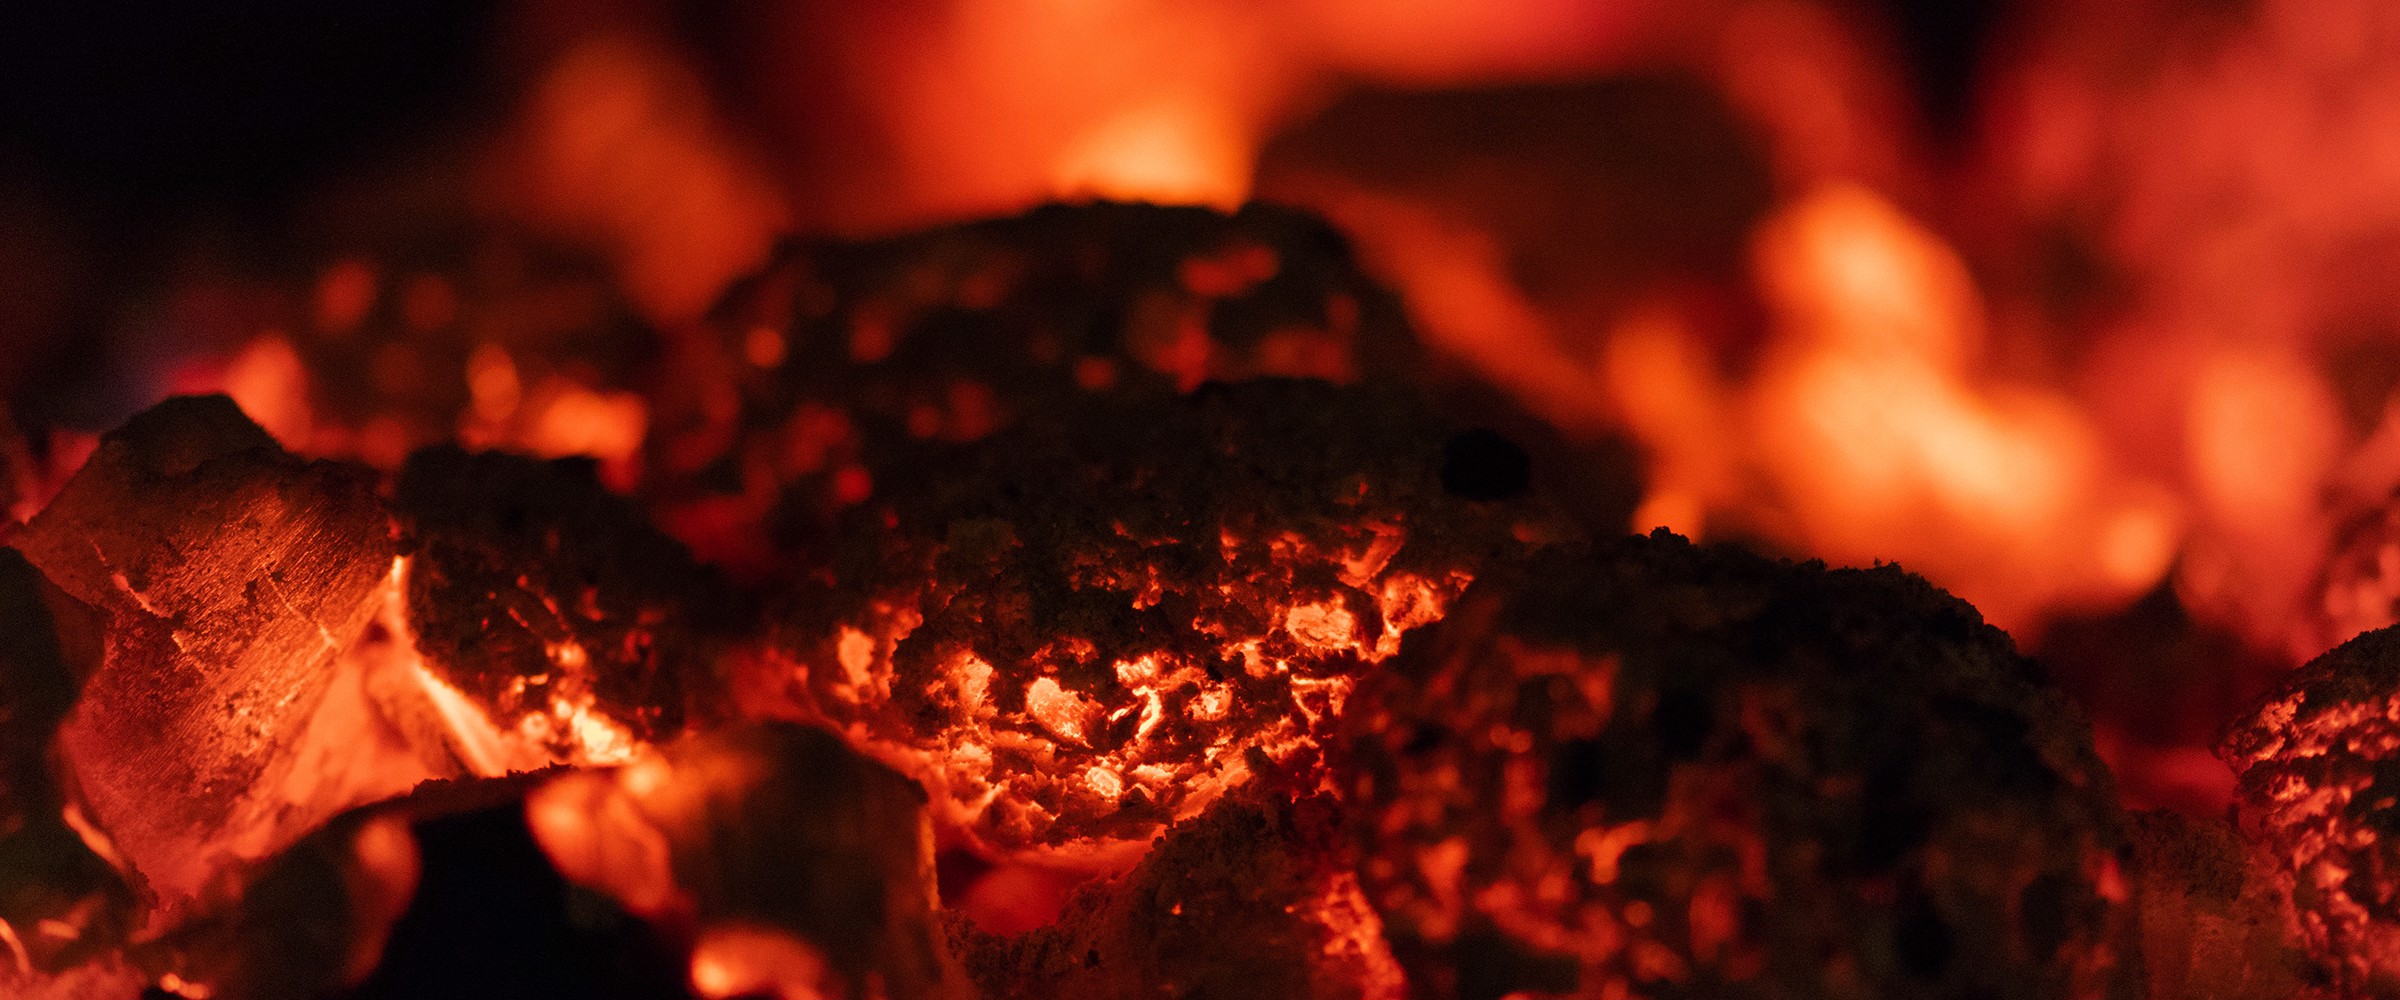 Vad är direkt och indirekt grillning?